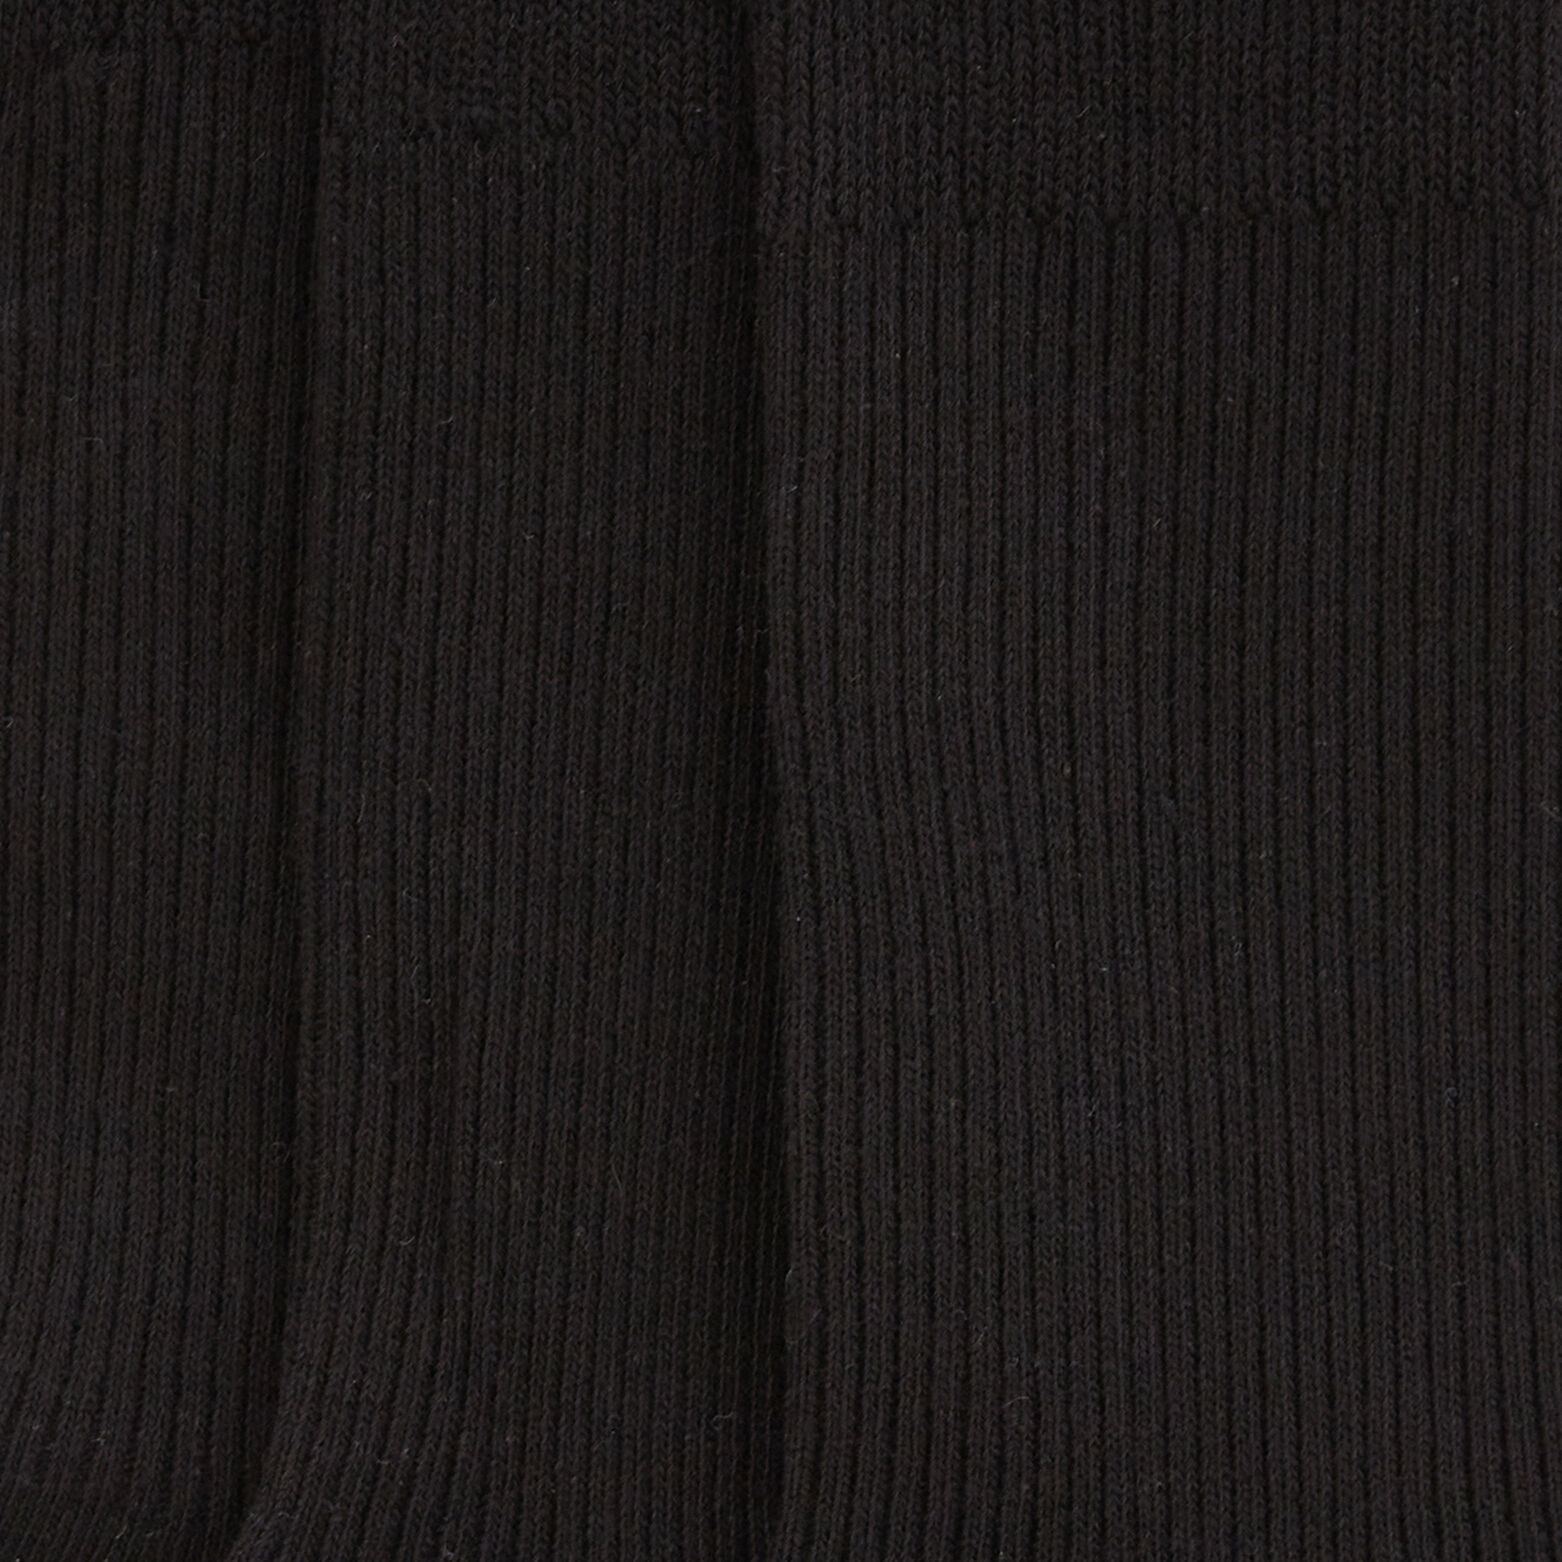 Sarenza Wear Chaussettes Homme pack de 3 Fil d'ecosse unies (Noir) -  Chaussettes et collants chez Sarenza (61181)